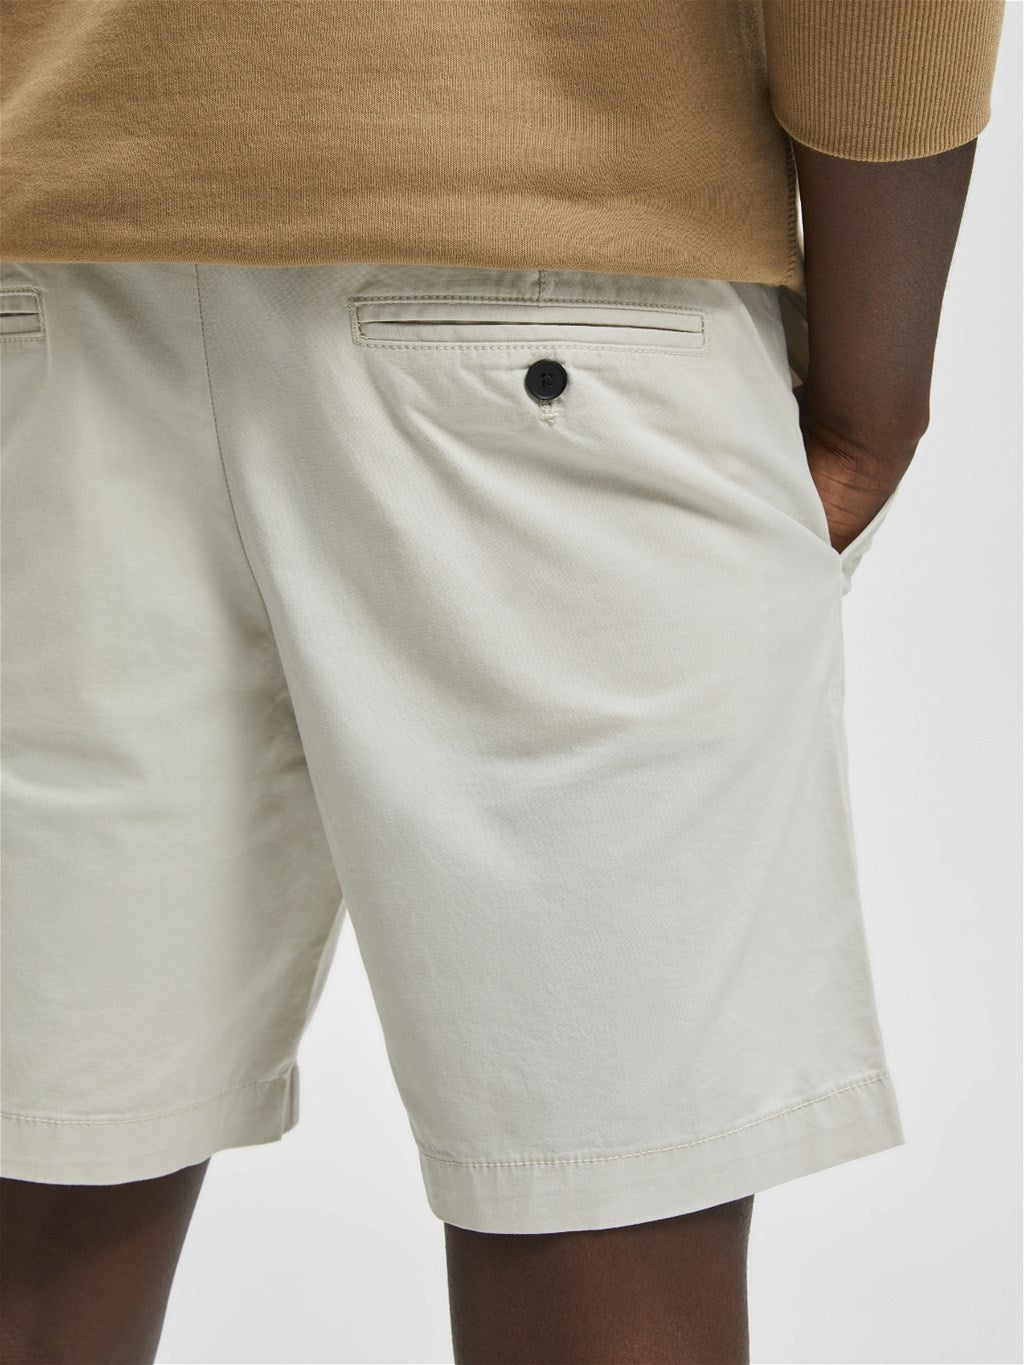 Selected Shorts 16083844